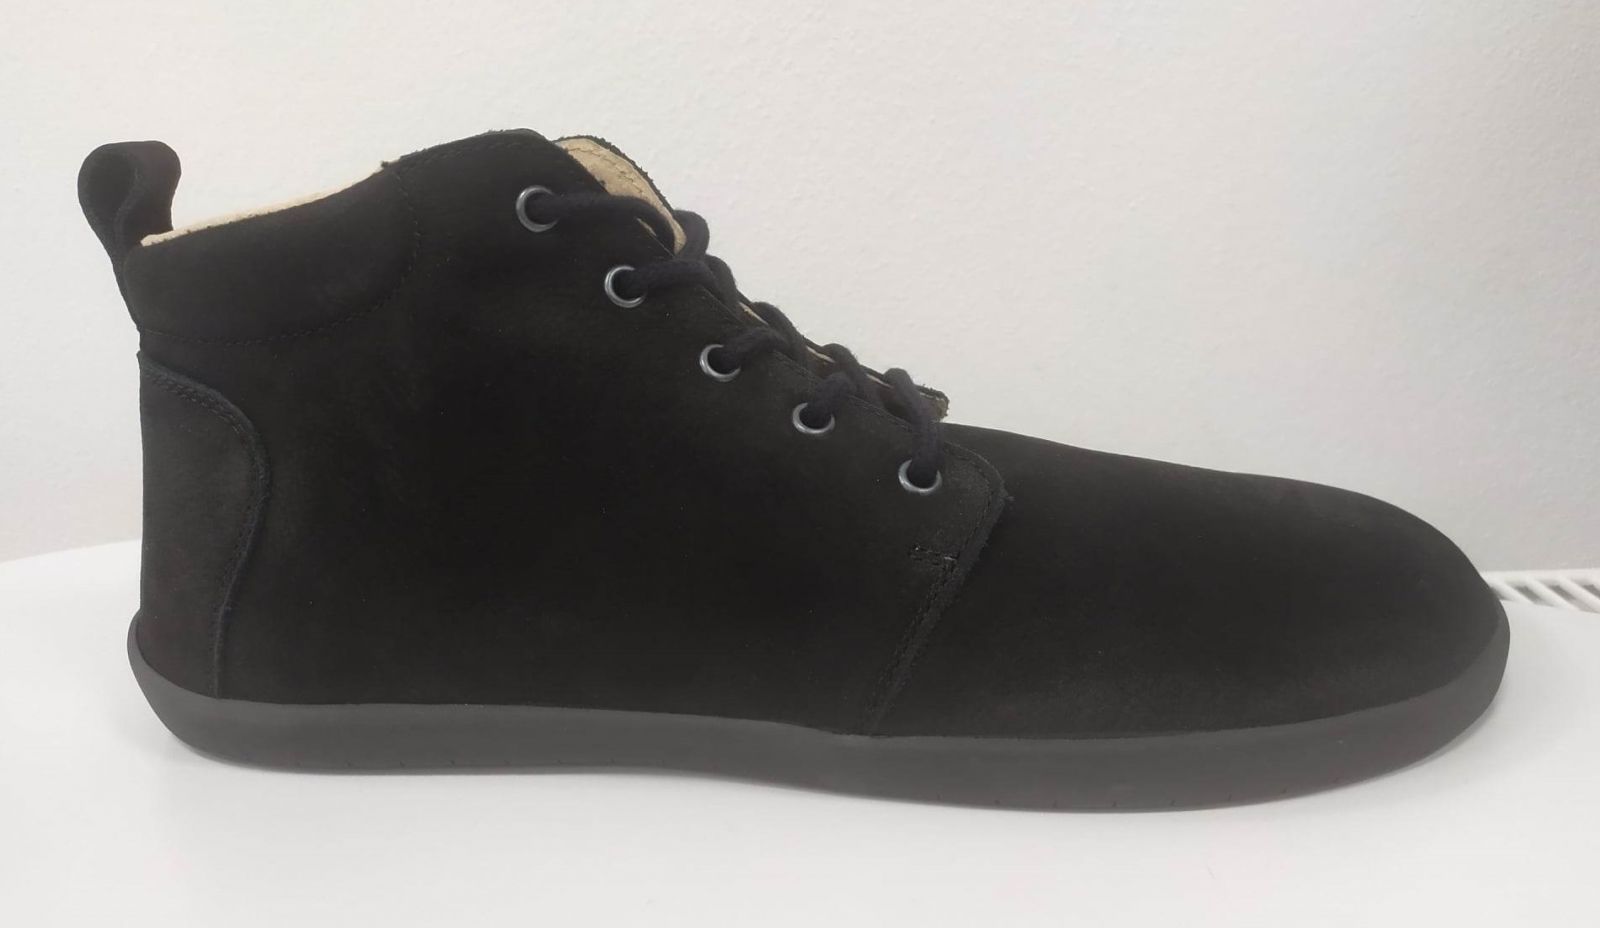 Členkové topánky Skama shoes Alma - black Zkama Shoes